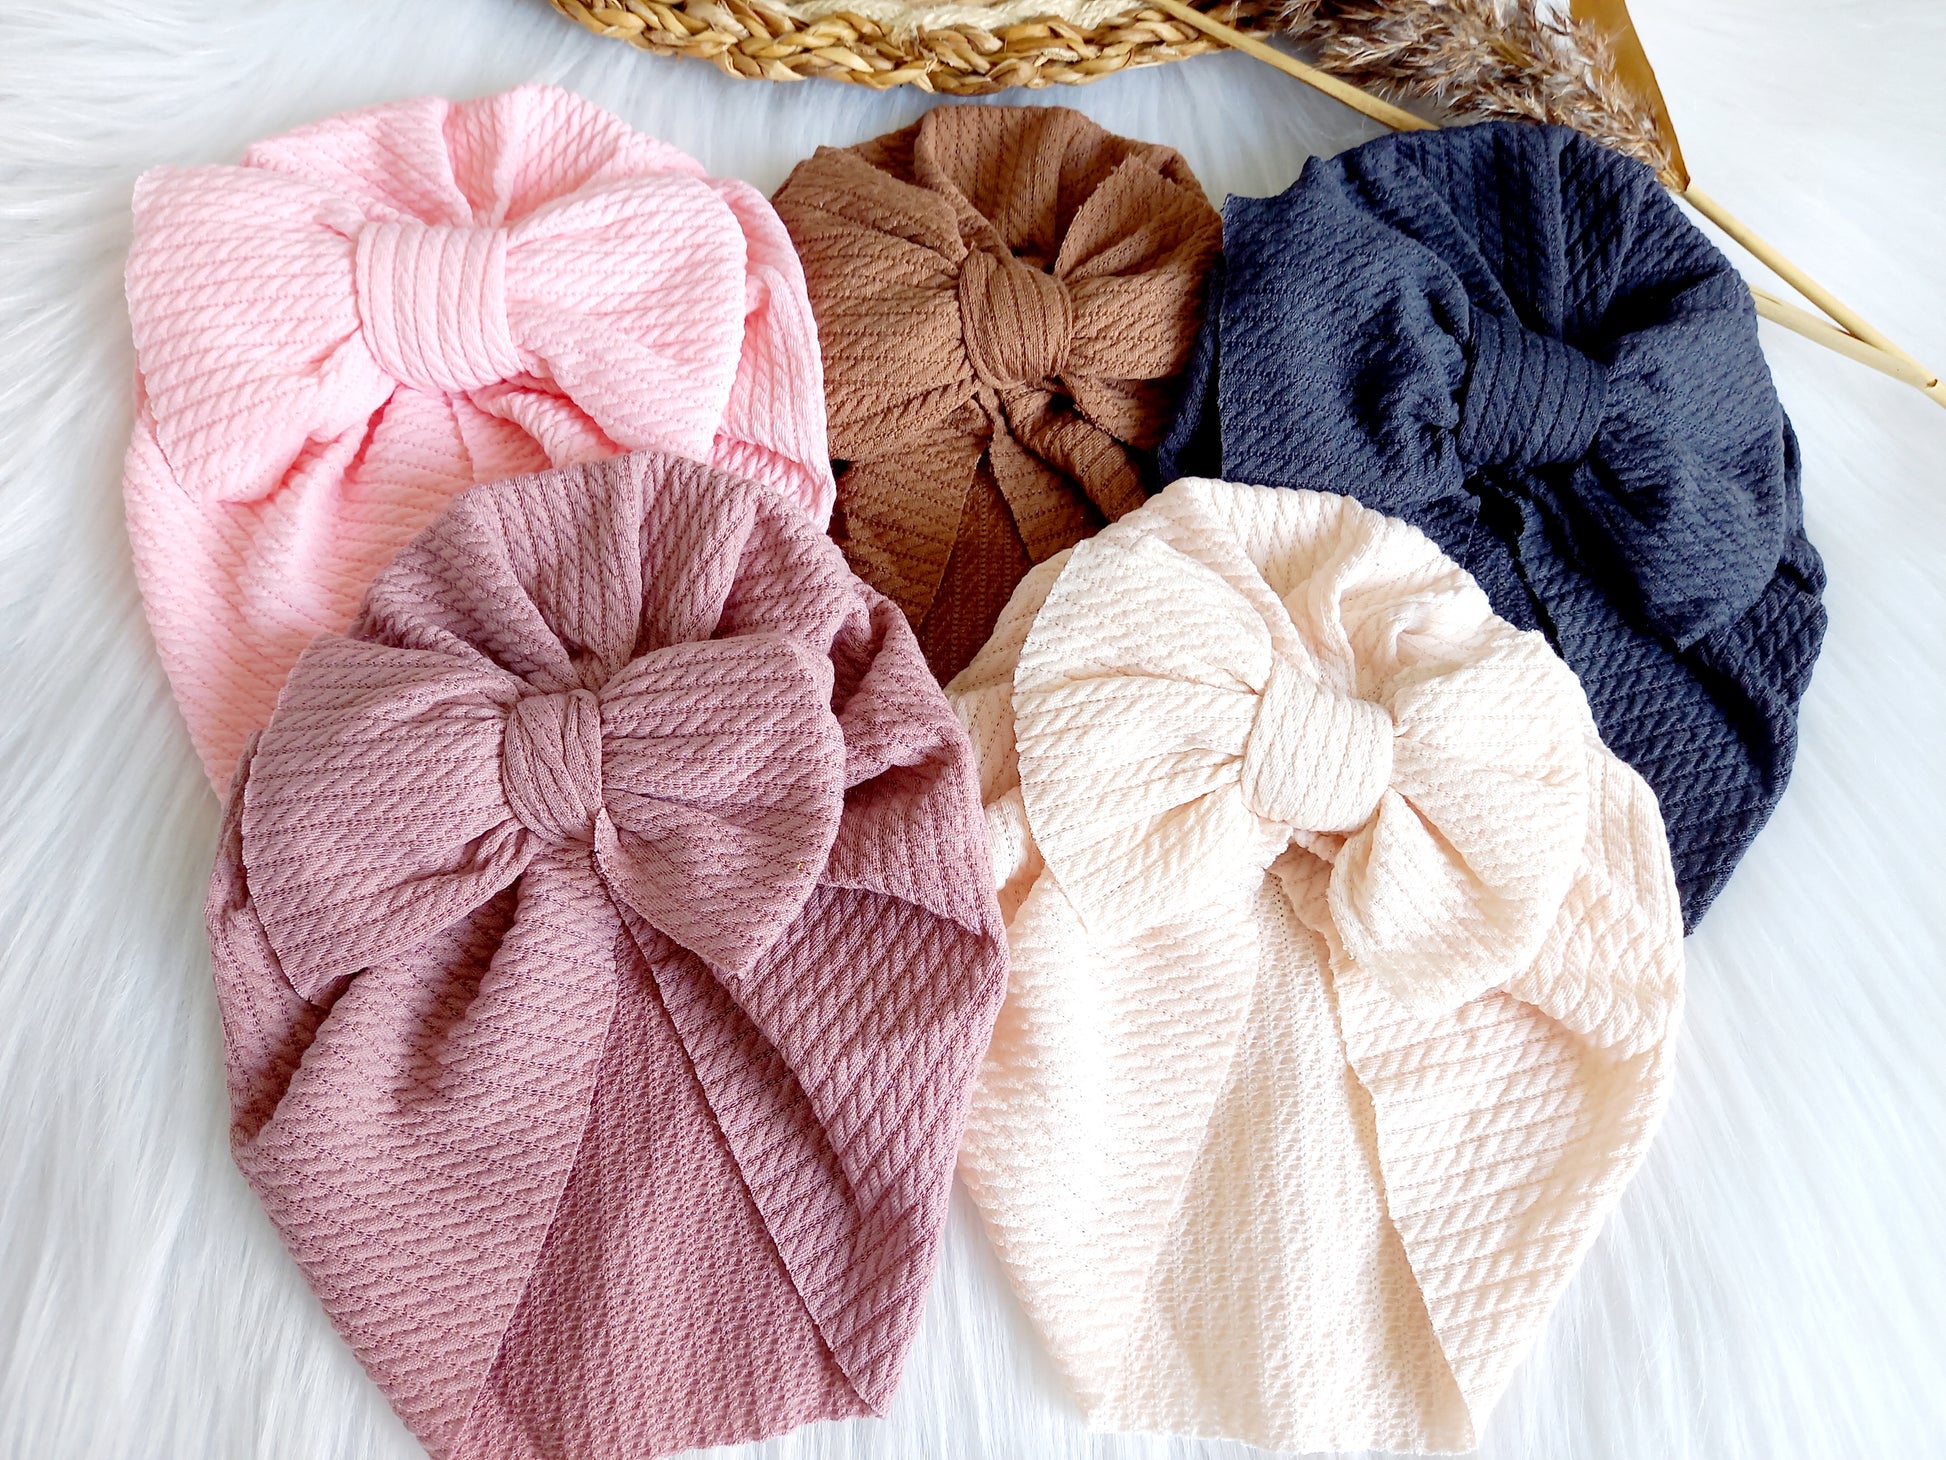 Deze leuke turbans zijn echt een musthave voor je kleintje. Ze zijn verkrijgbaar in verschillende kleuren zodat je het kan matchen bij het outfit van je kleintje. turban baby esmee 